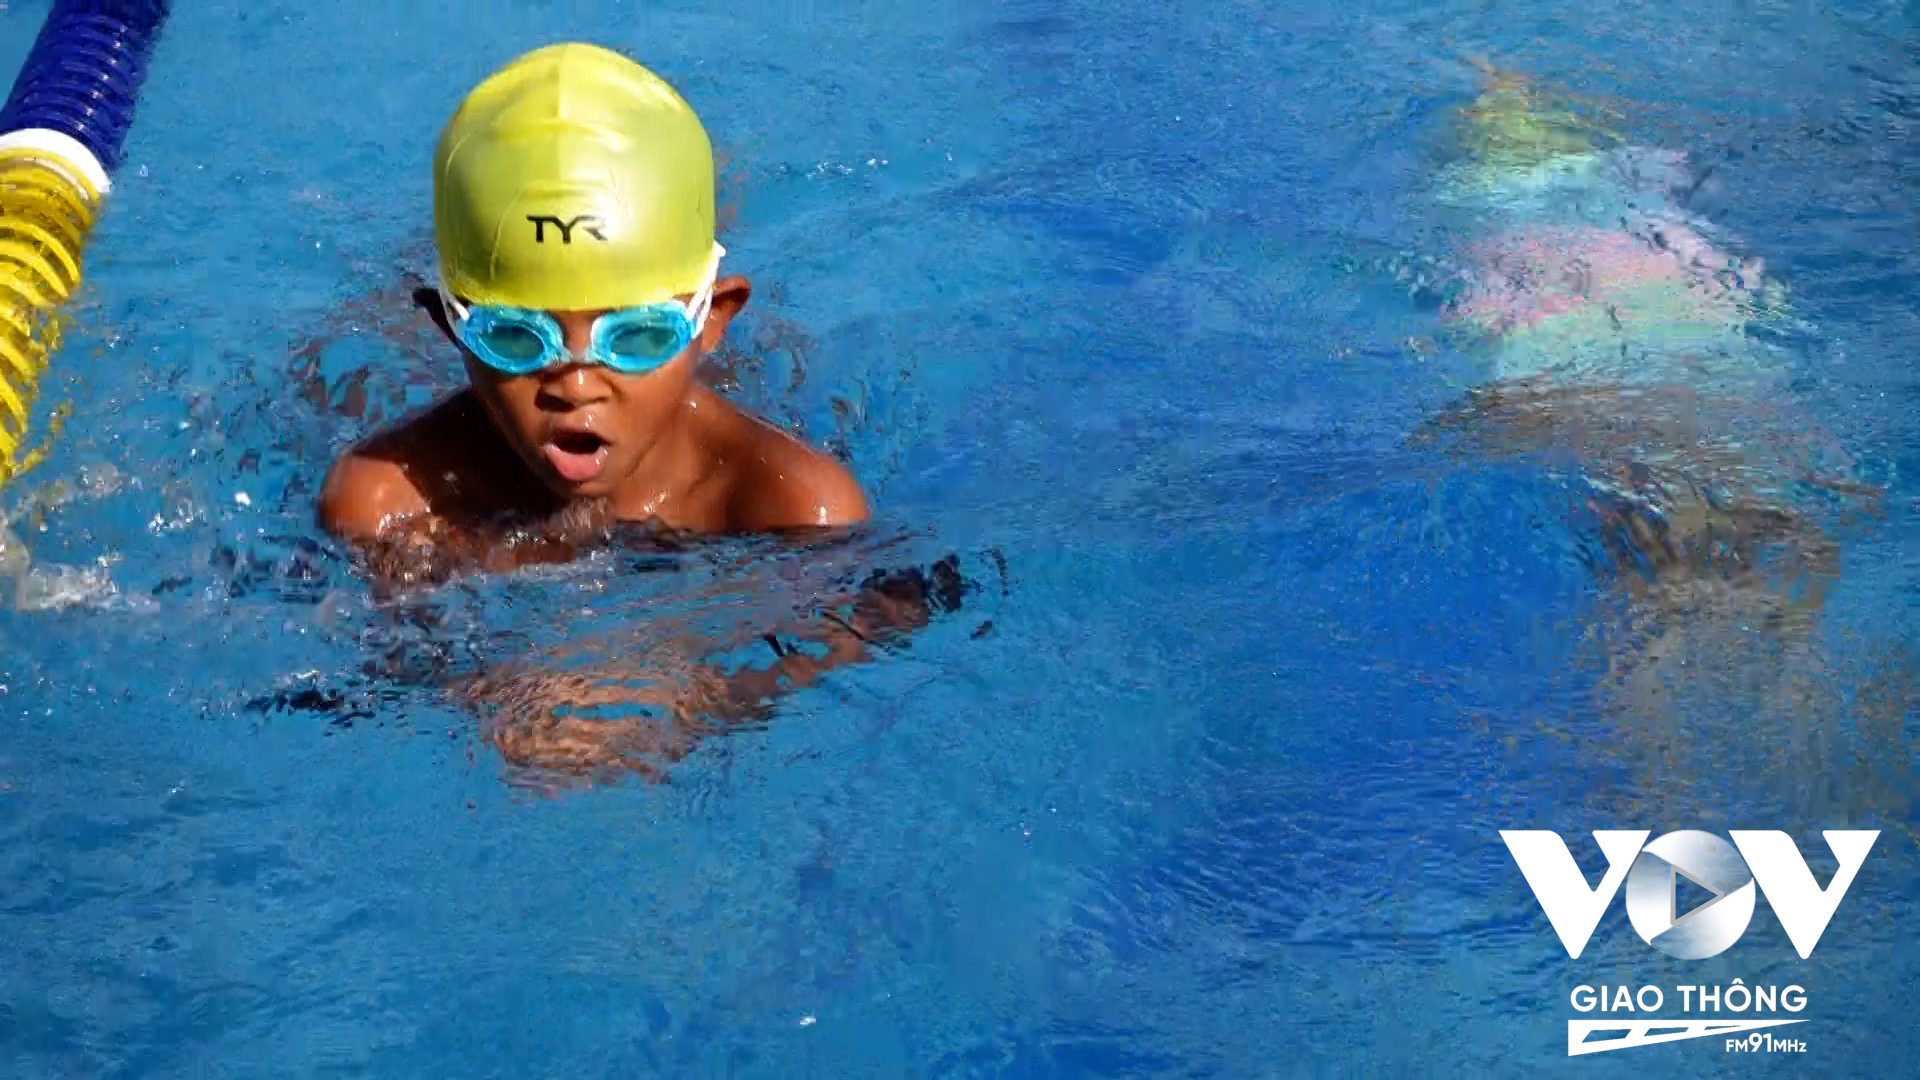 Câu lạc bộ “Bơi và những người bạn” thường xuyên mở các lớp dạy bơi miễn phí tại Mái ấm Thiên thần Quận 9